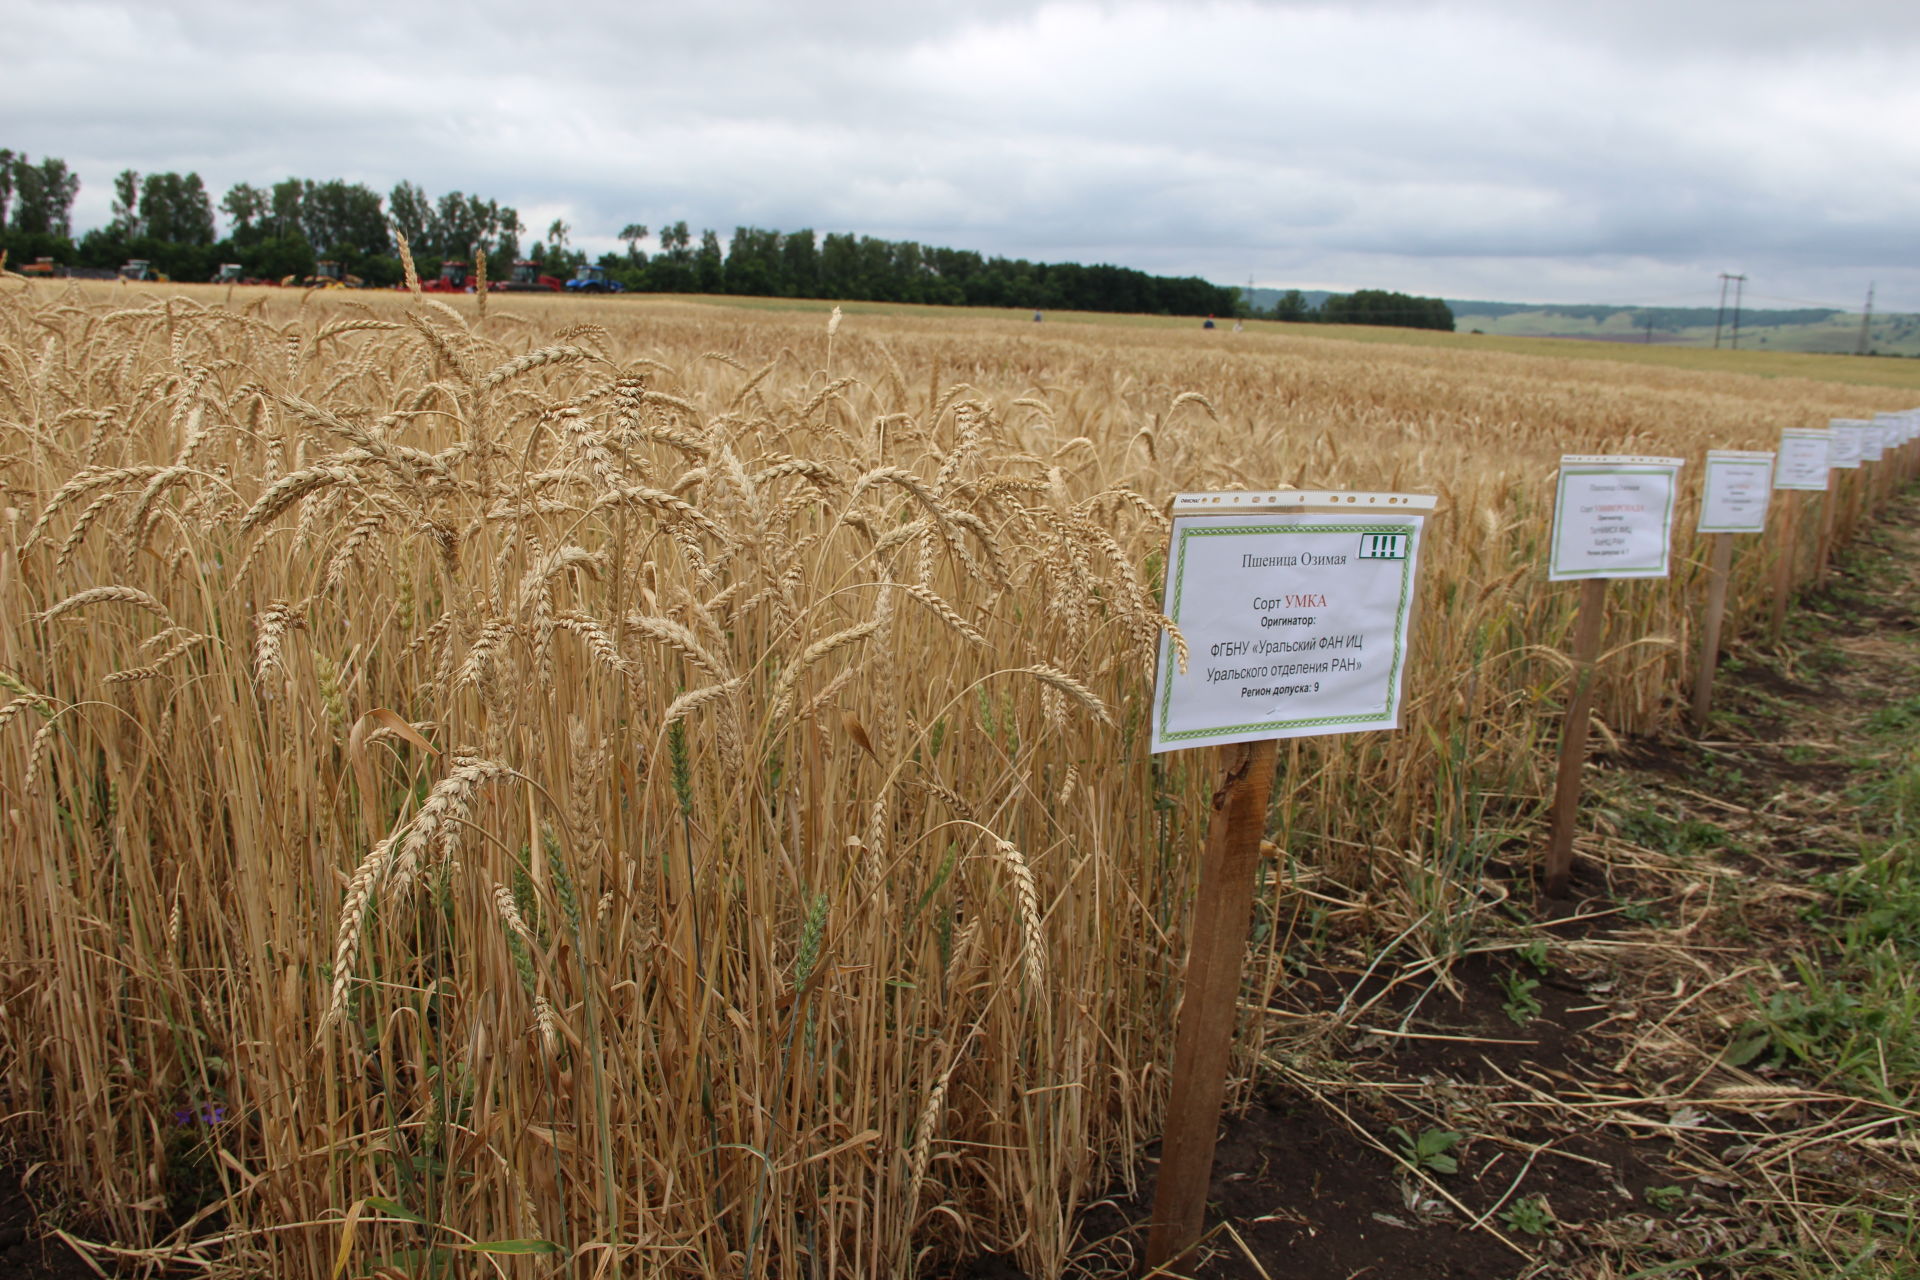 Аграрии со всего Татарстана увидели, как с помощью современных технологий выращивают зерновые в Заинском районе